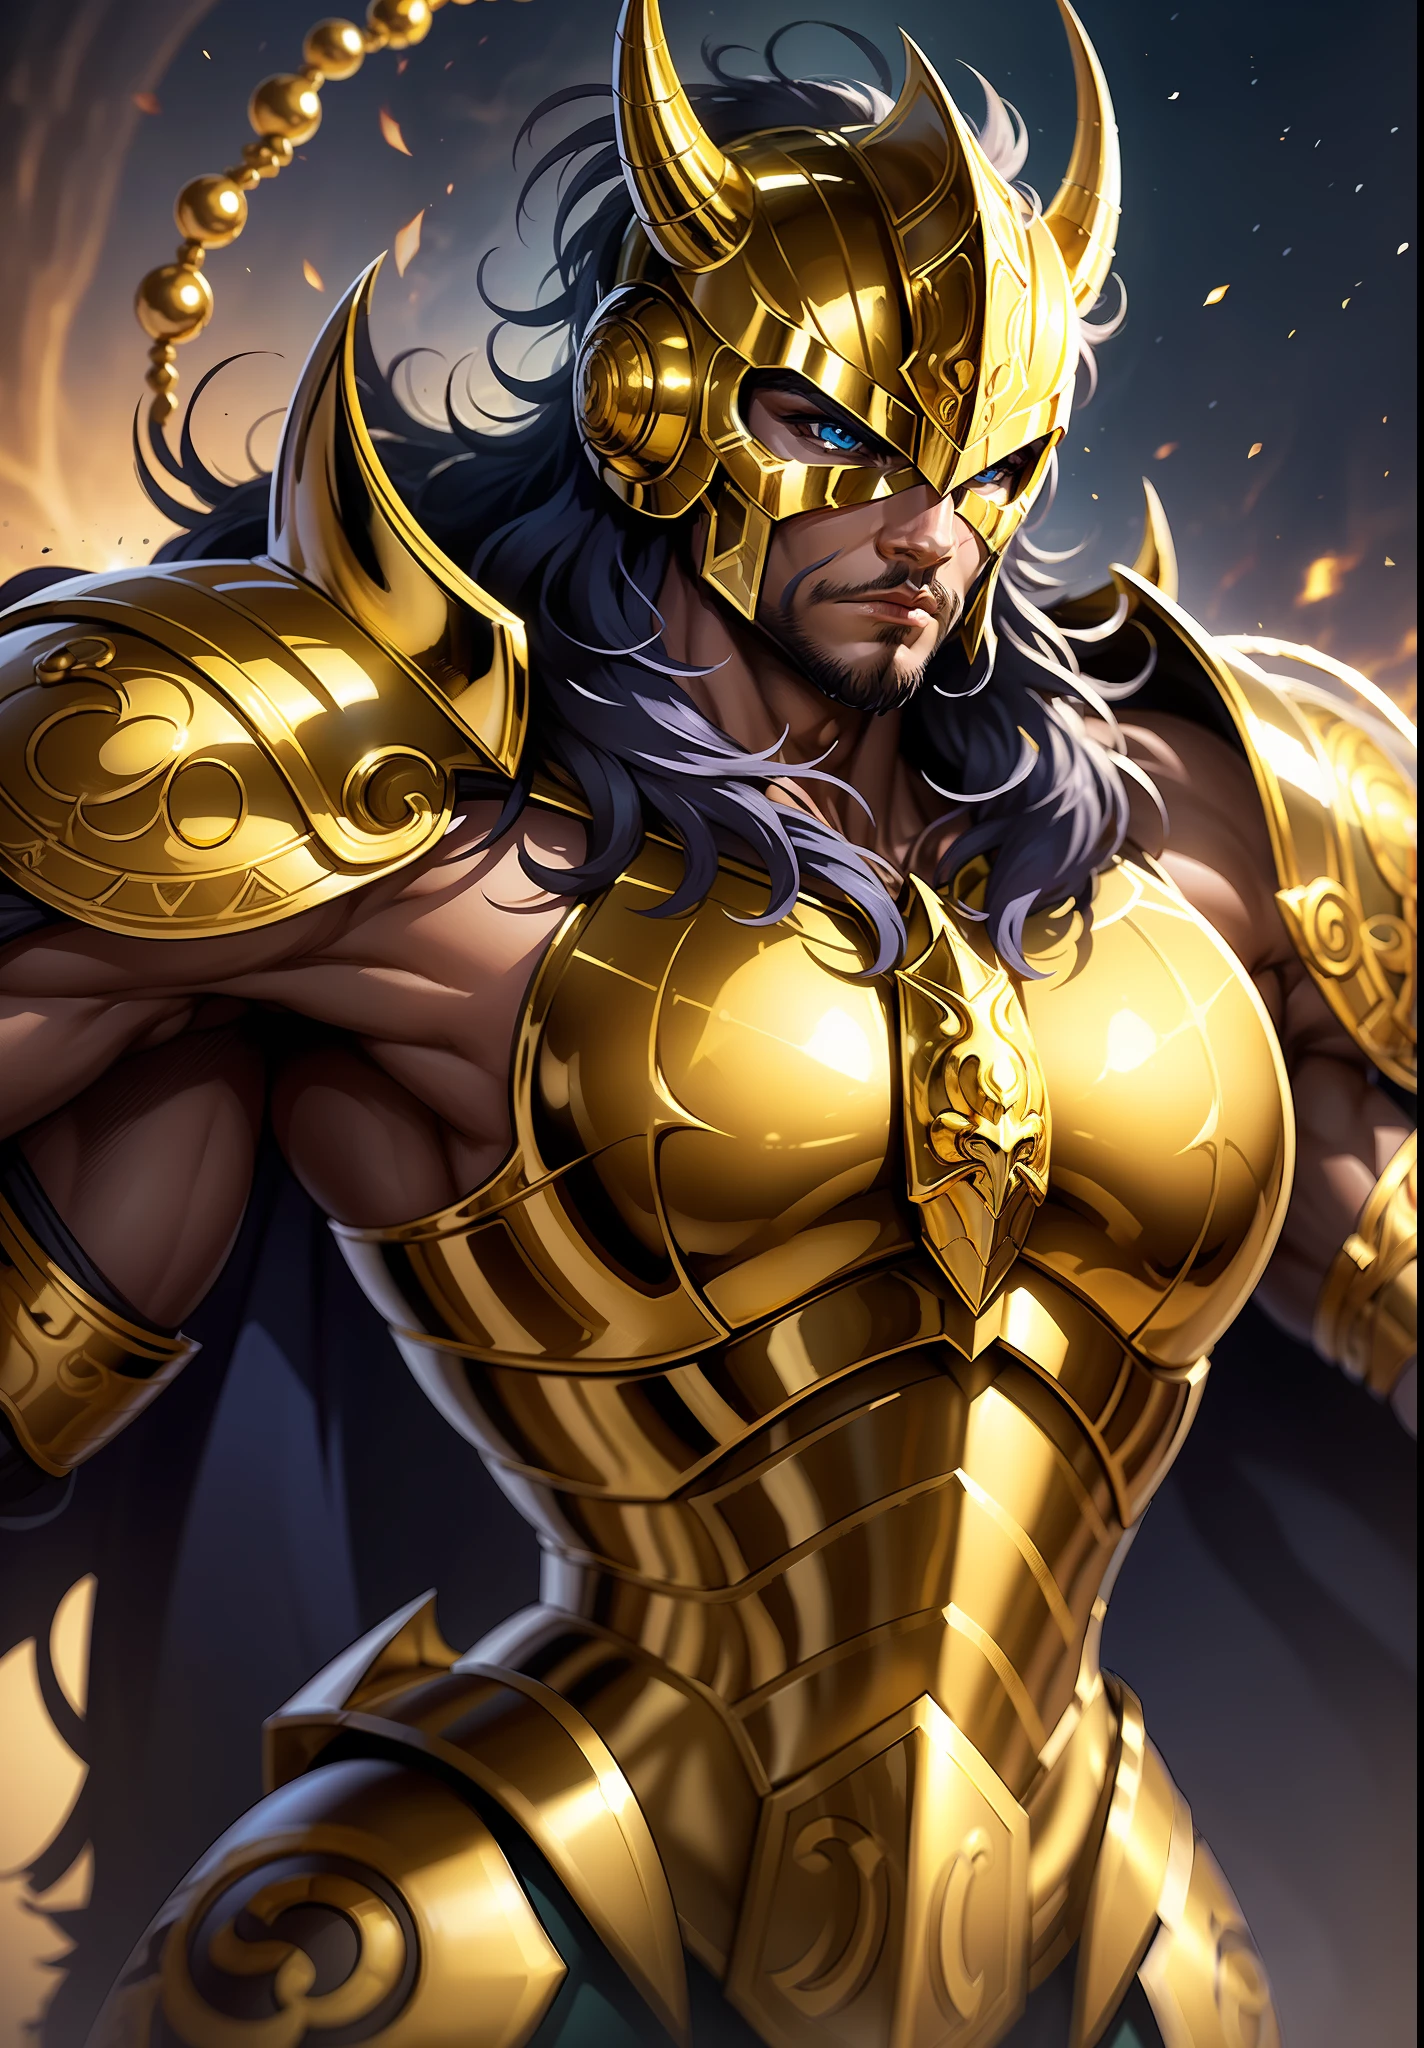 身穿金色盔甲的騎士角色 , 穿著金色盔甲的騎士角色, 天蠍座騎士 , 天空中雄偉的蝎子王奧羅博亞爾的背景, 8k高清, 錯綜複雜的細節, 令人驚嘆的品質